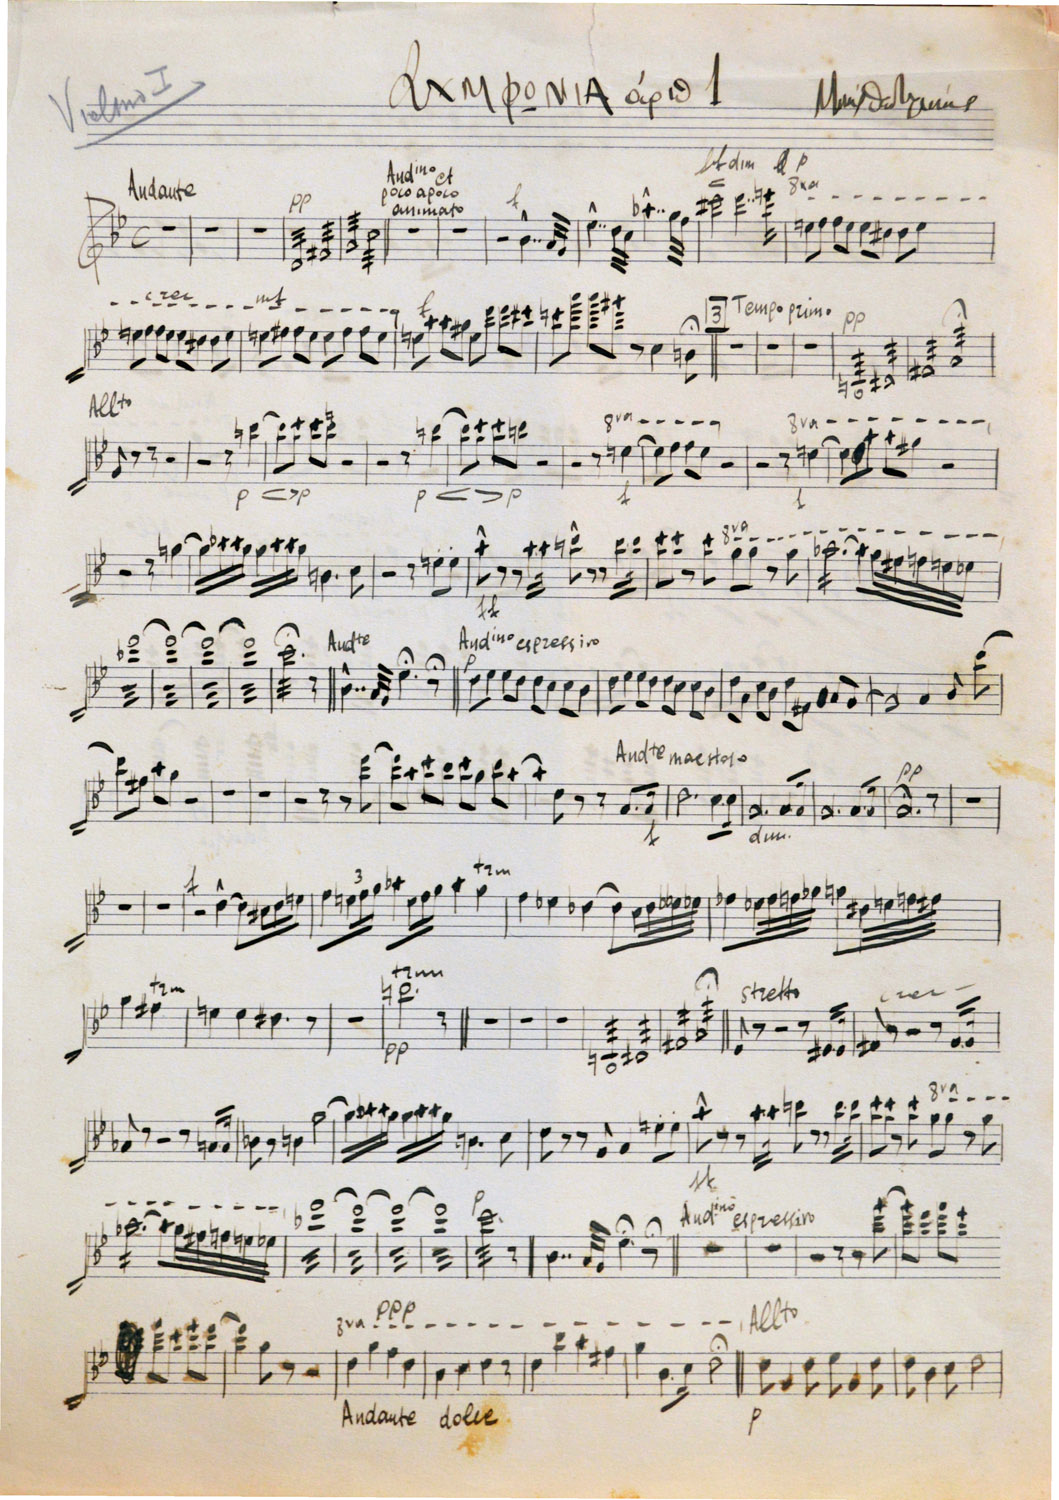 ΘΕΟΔΩΡΑΚΗΣ, Μίκης, γ. 1925, μουσικοσυνθέτης.